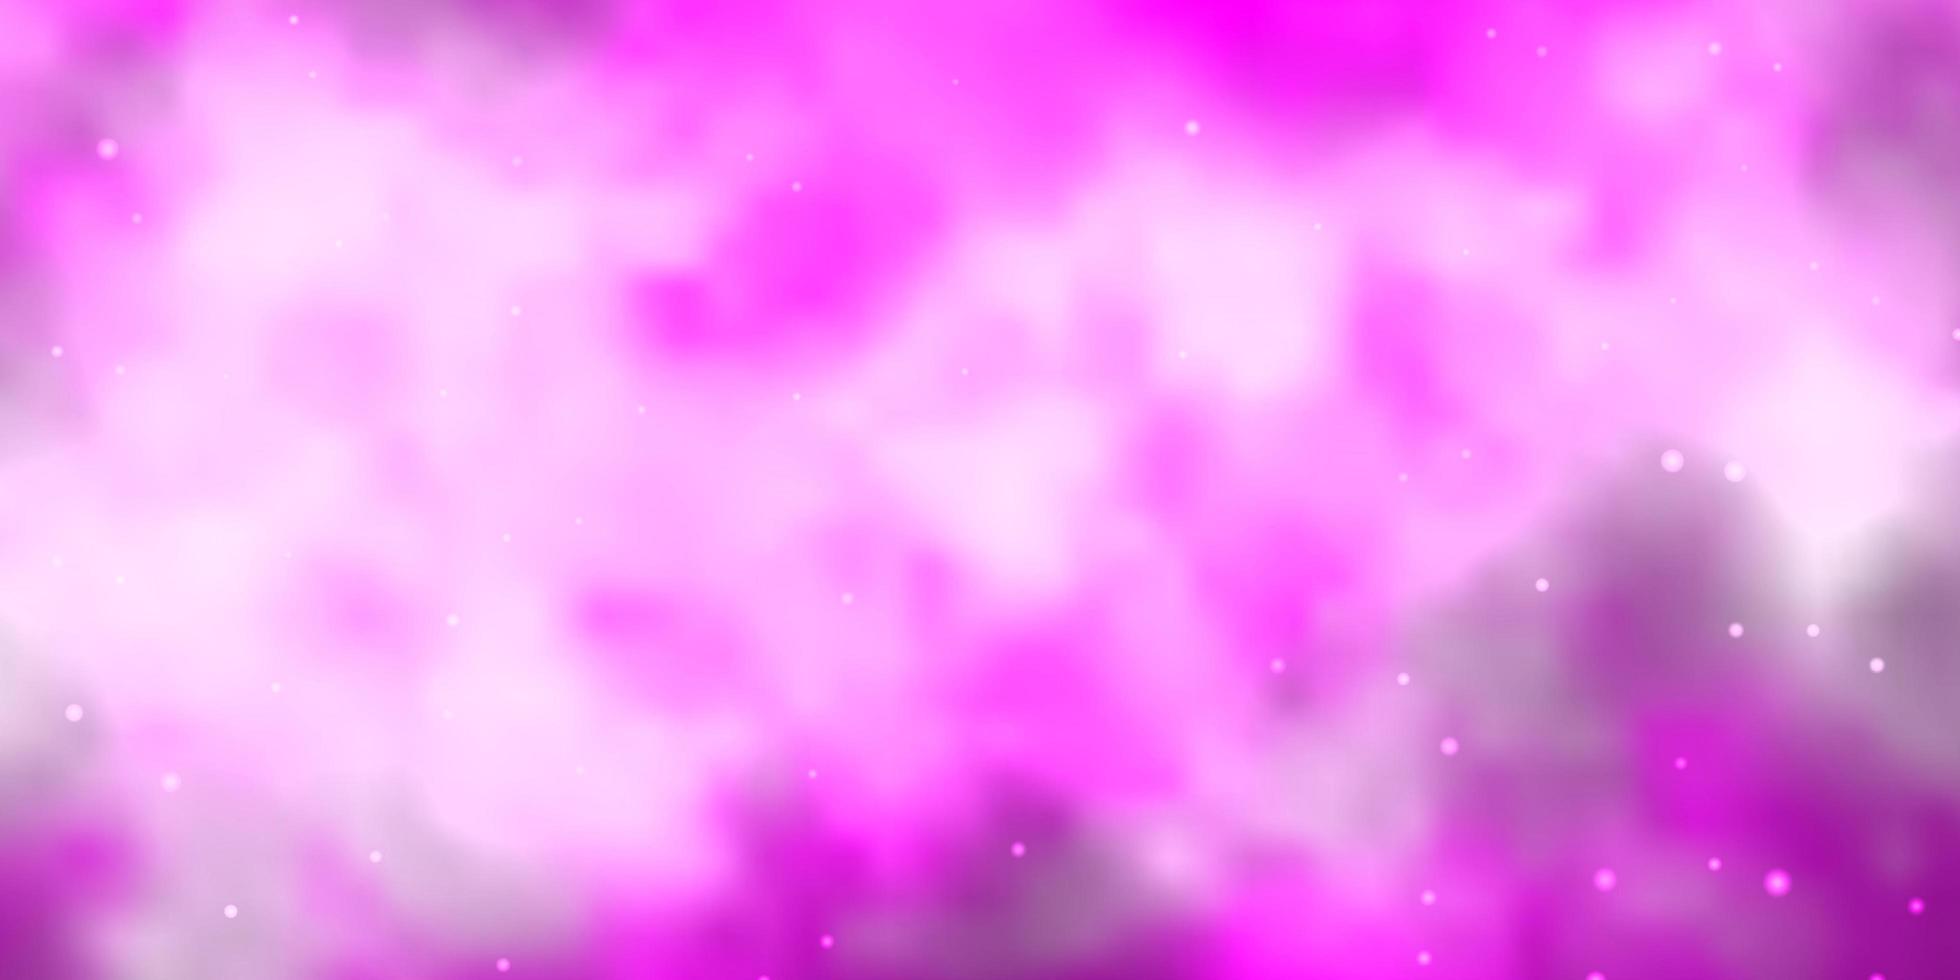 plantilla de vector rosa claro con estrellas de neón.